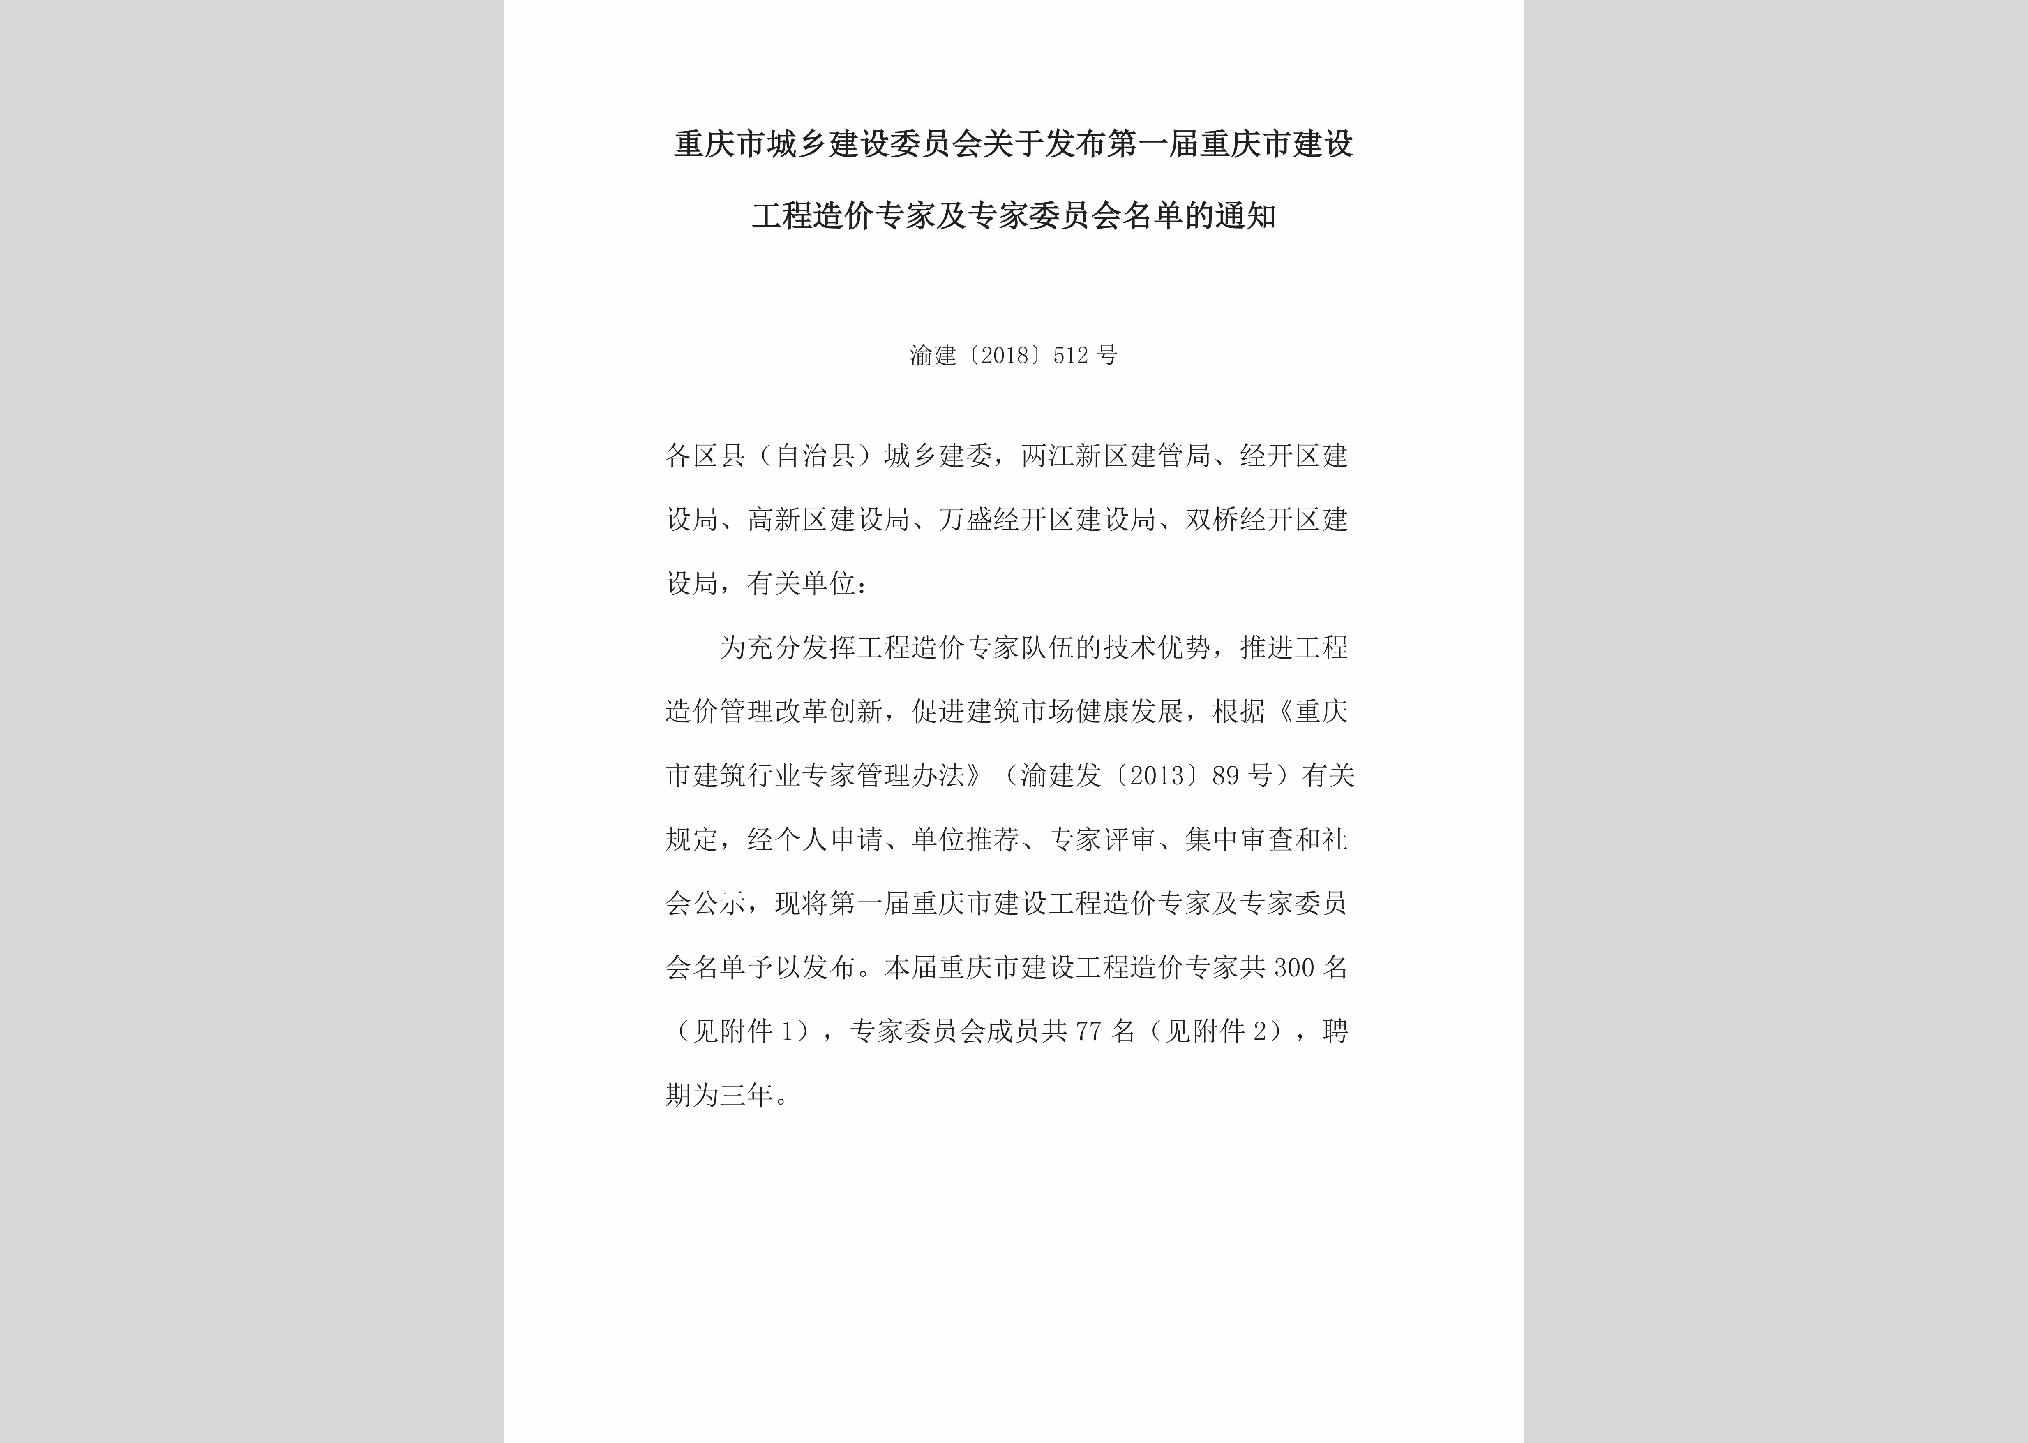 渝建[2018]512号：关于发布第一届重庆市建设工程造价专家及专家委员会名单的通知